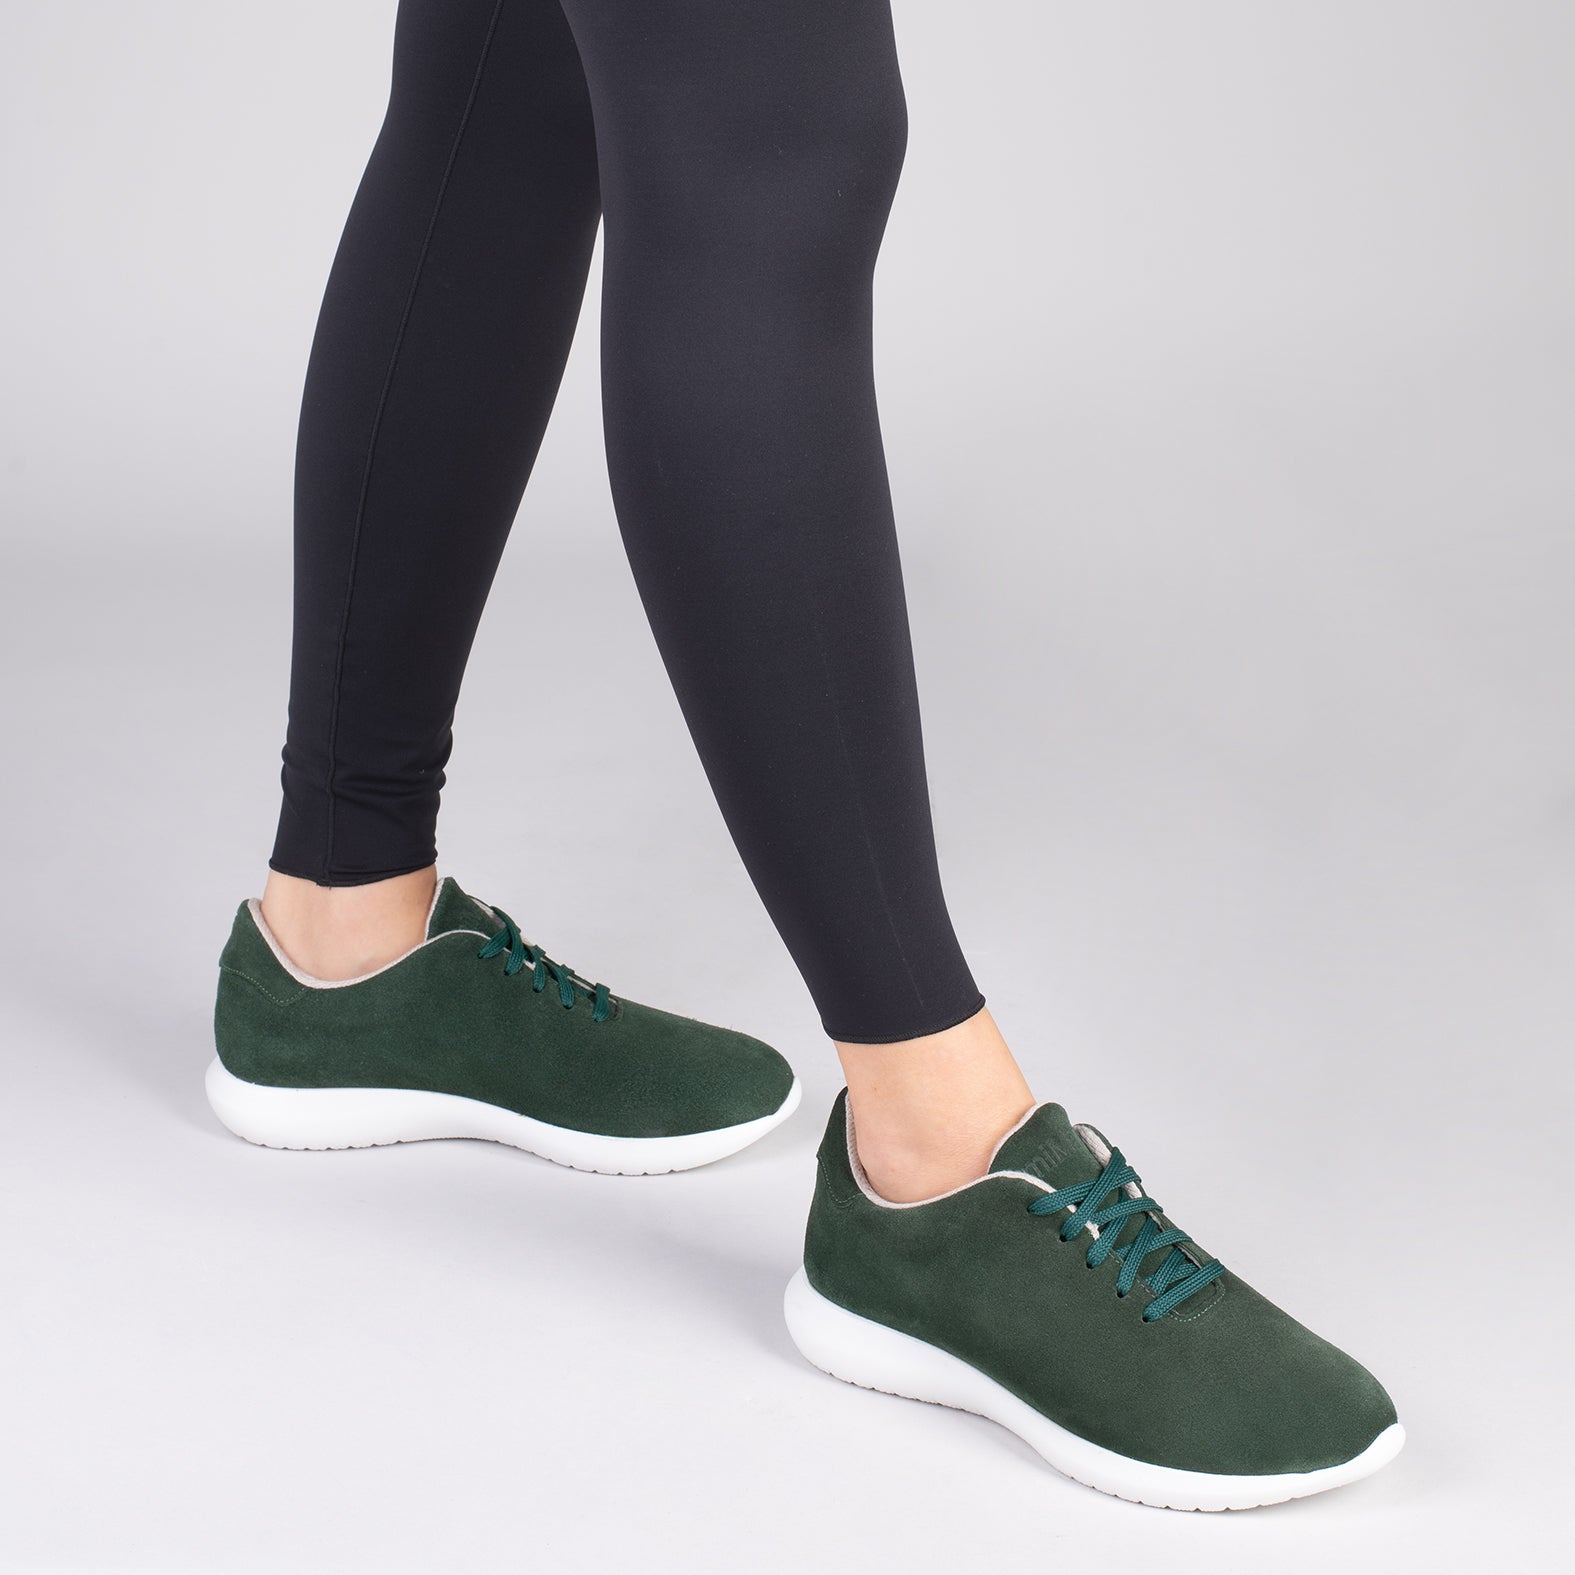 WALK – Zapatillas cómodas de mujer VERDE BOTELLA